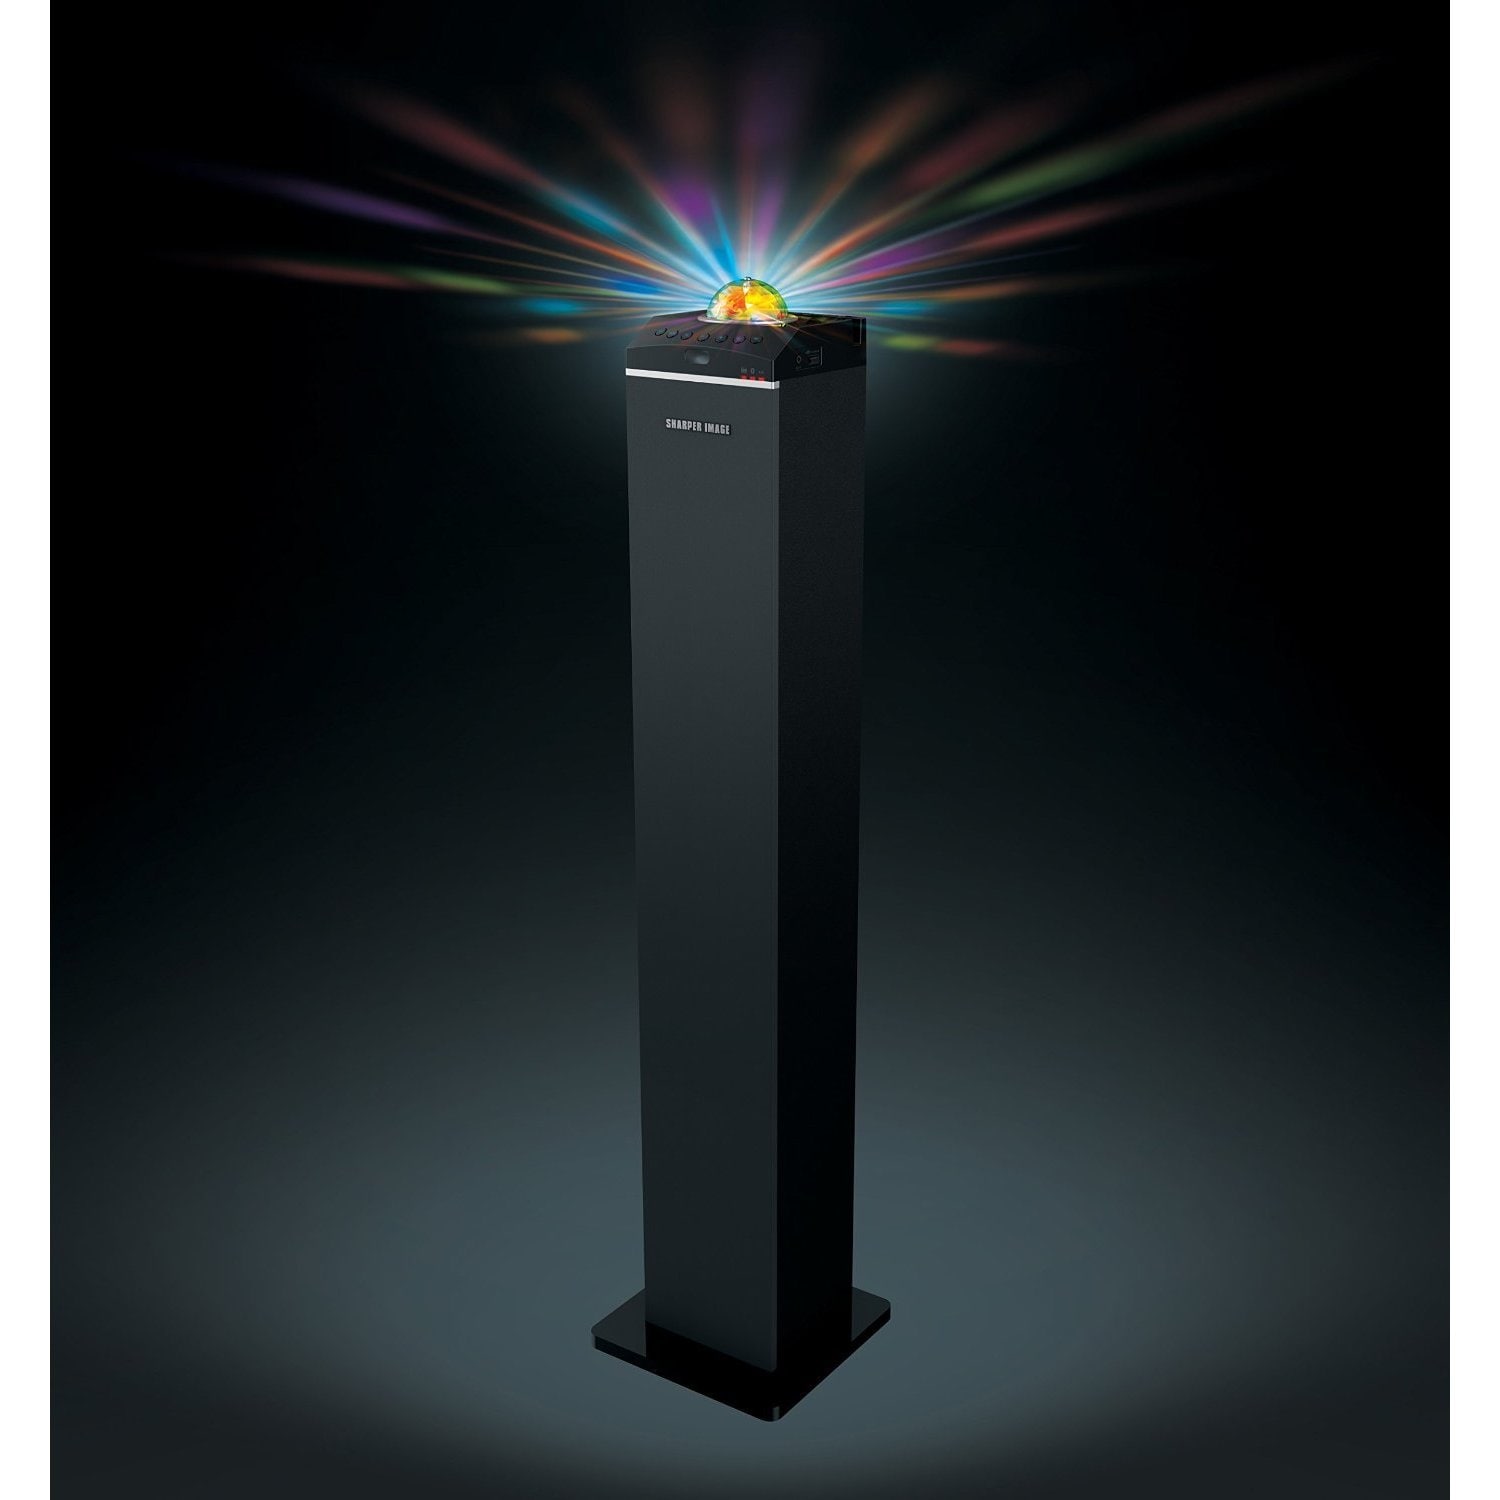 led tower speaker sharper image